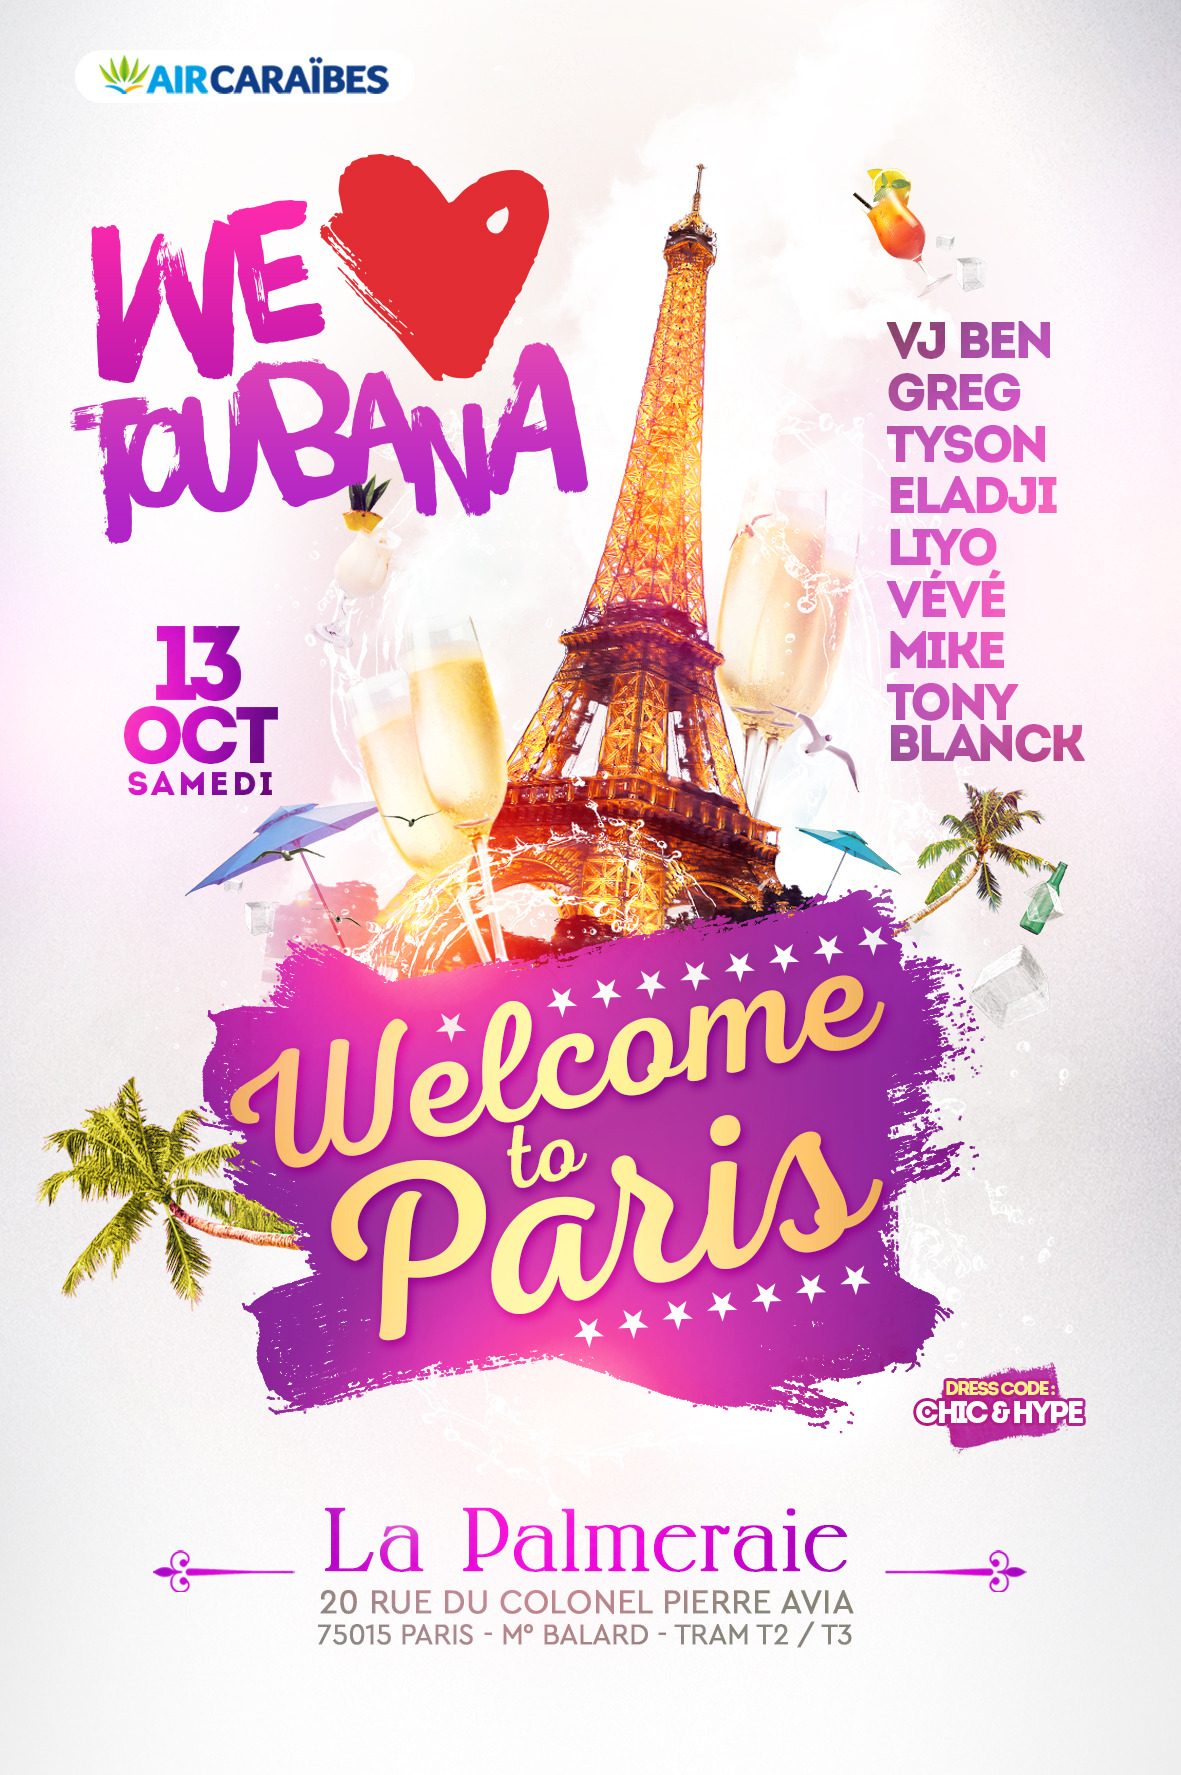 We Love Toubana Welcome To Paris